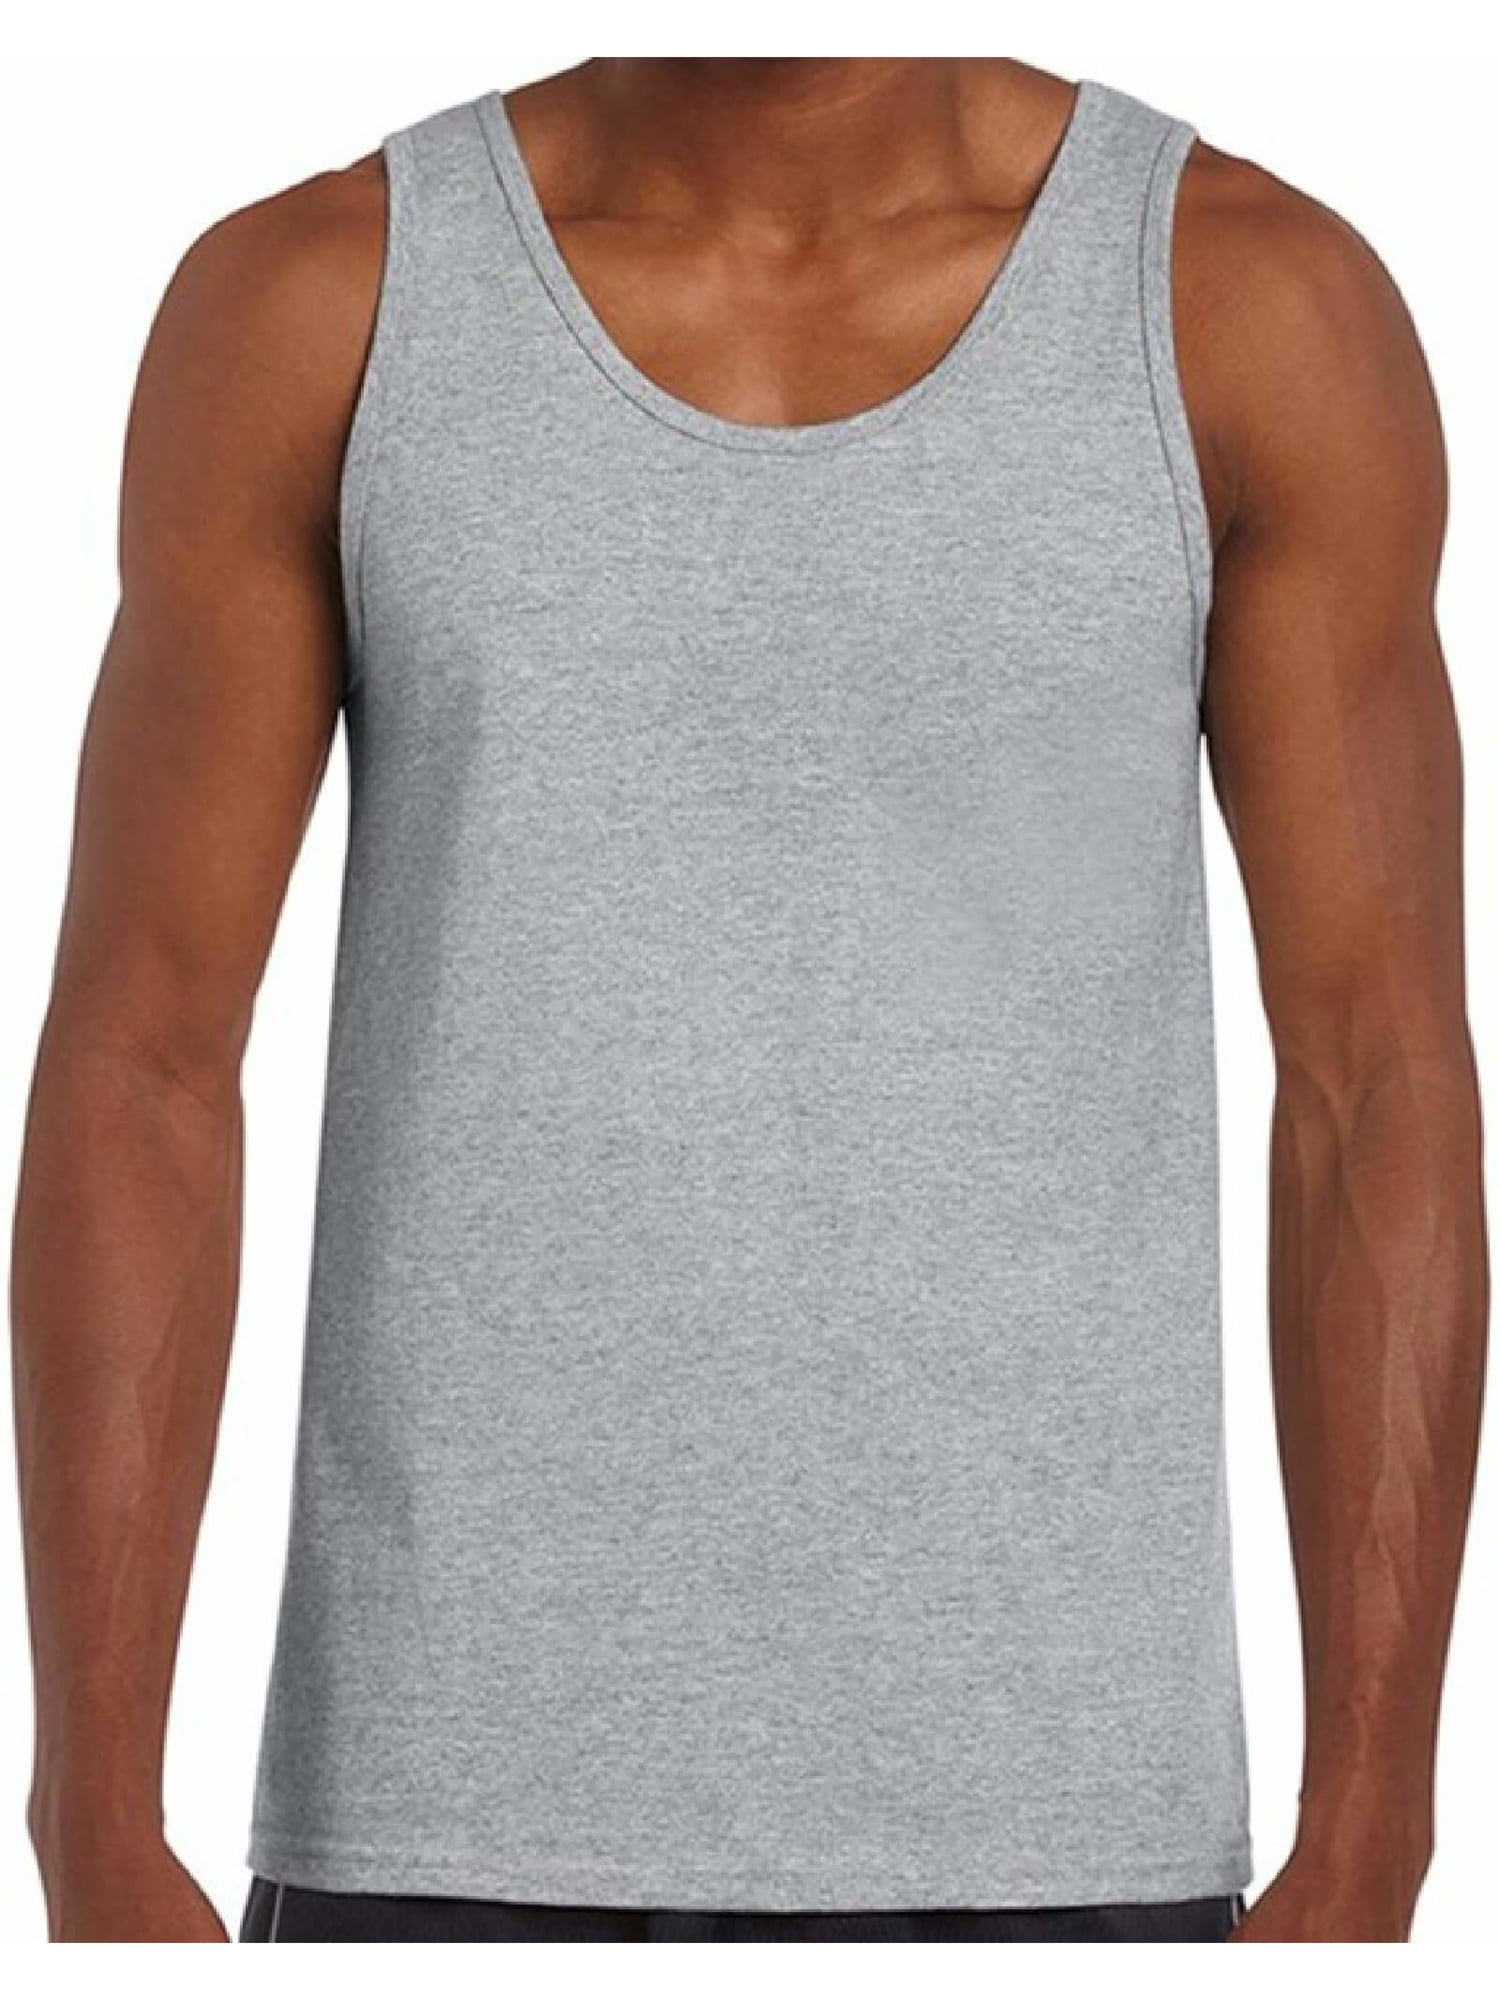 New VTL Men's Sizes M L 2XL Gray & White Stripes Muscle Tank Top T Shirt 